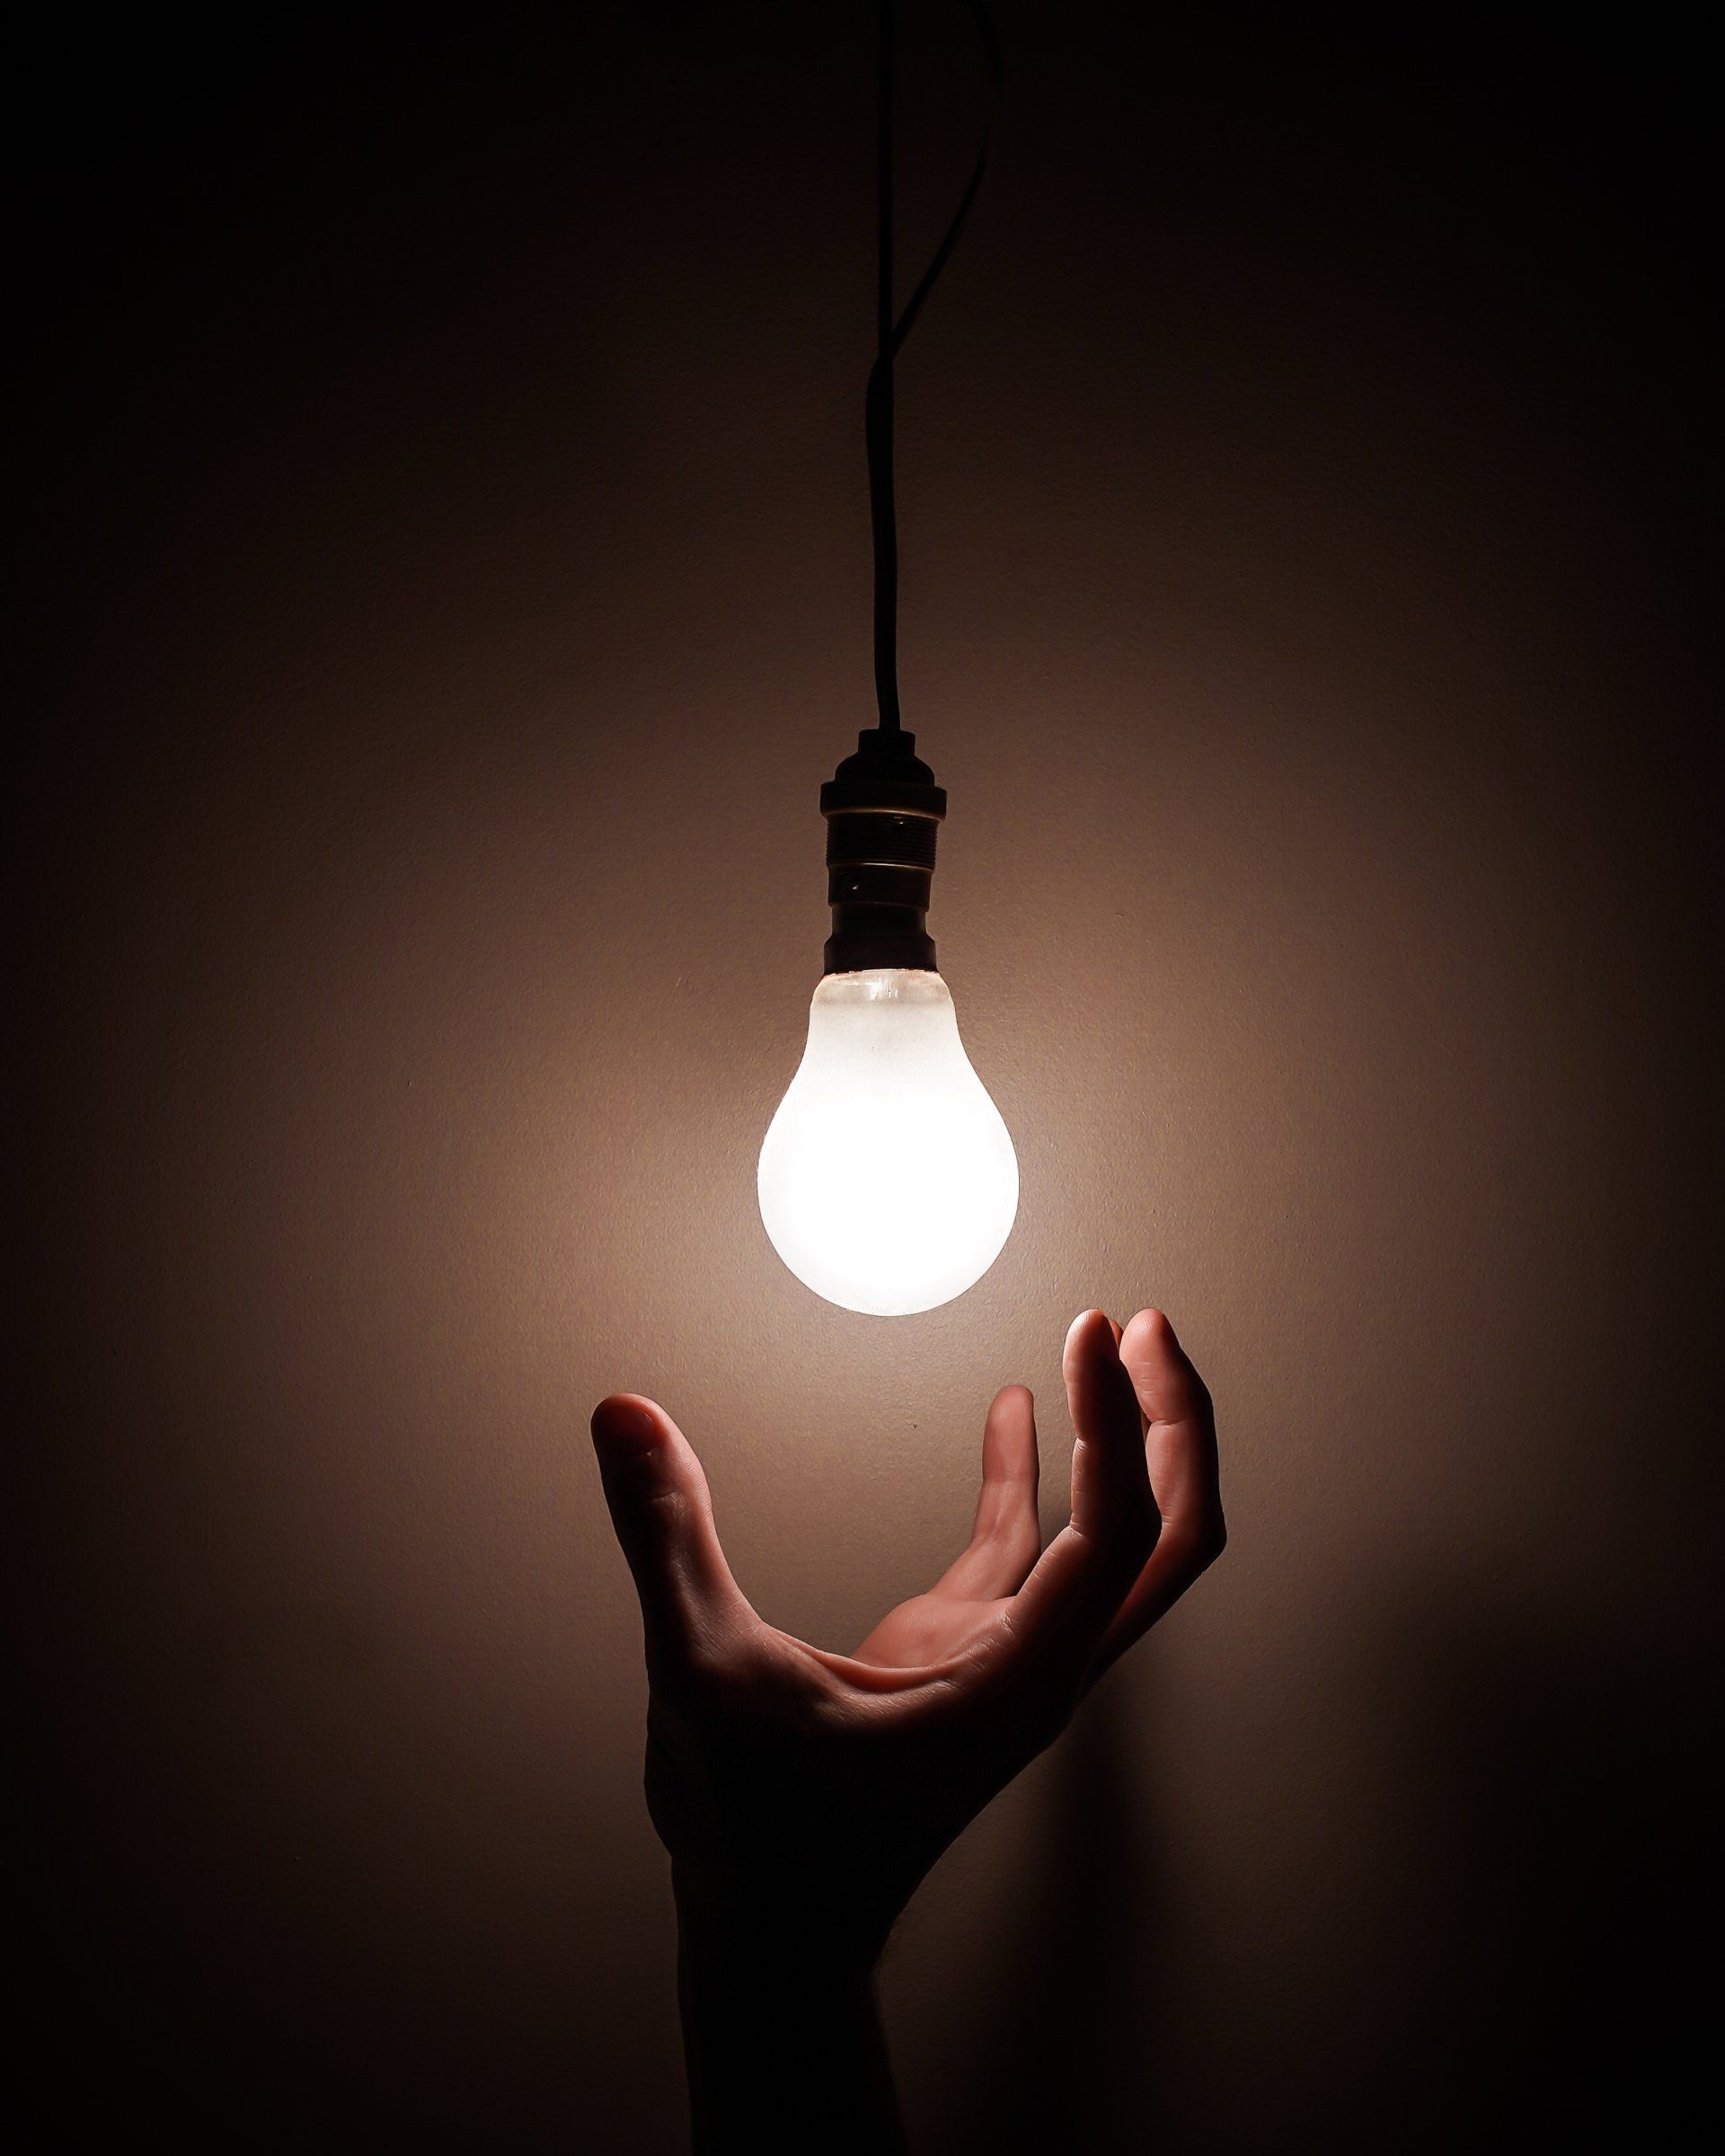 a hand below a bulb